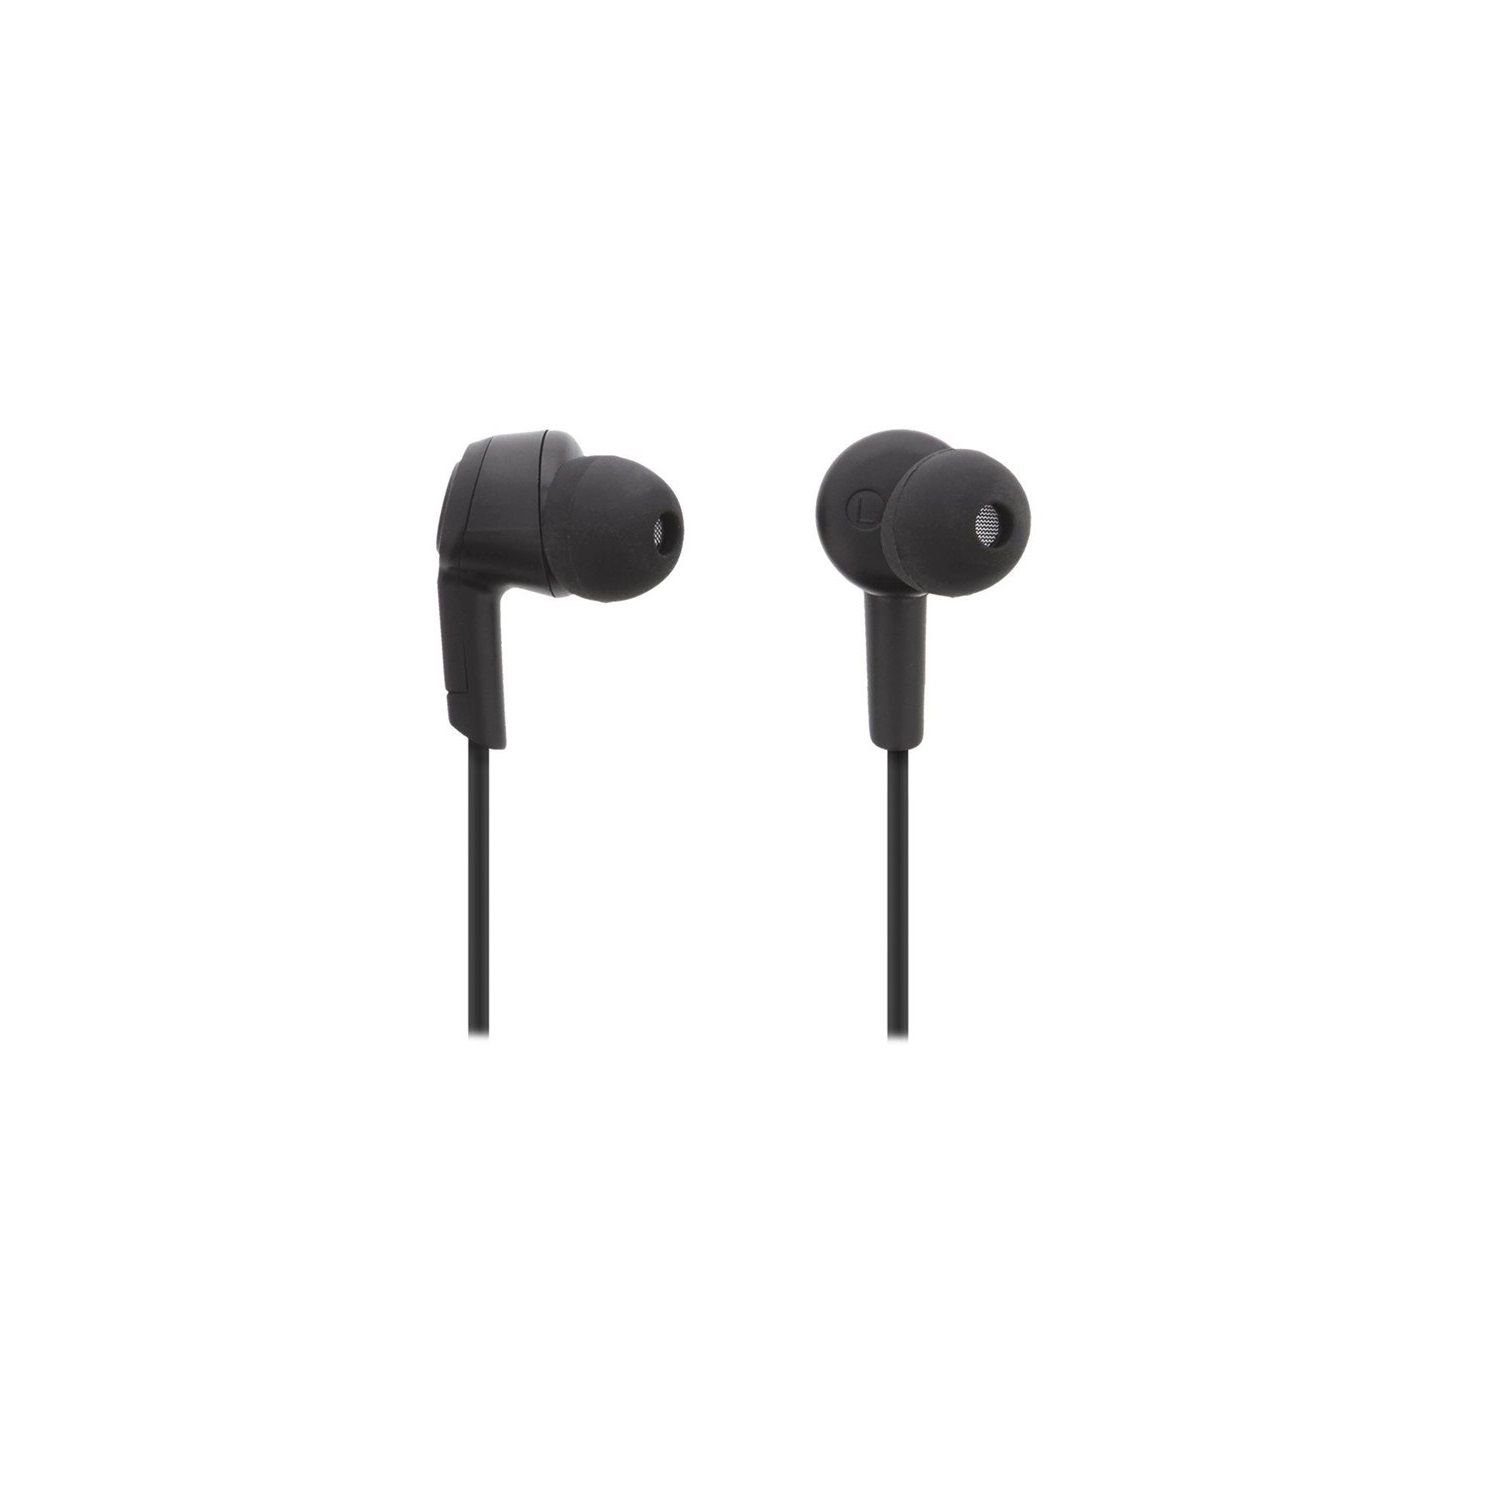 10m (integriertes Jahre Std In-Ear STREETZ In-Ear-Kopfhörer Bluetooth bis Herstellergarantie) 3 Bluetooth zu inkl. 5 HL-BT301 Kopfhörer Bluetooth, Mikrofon,